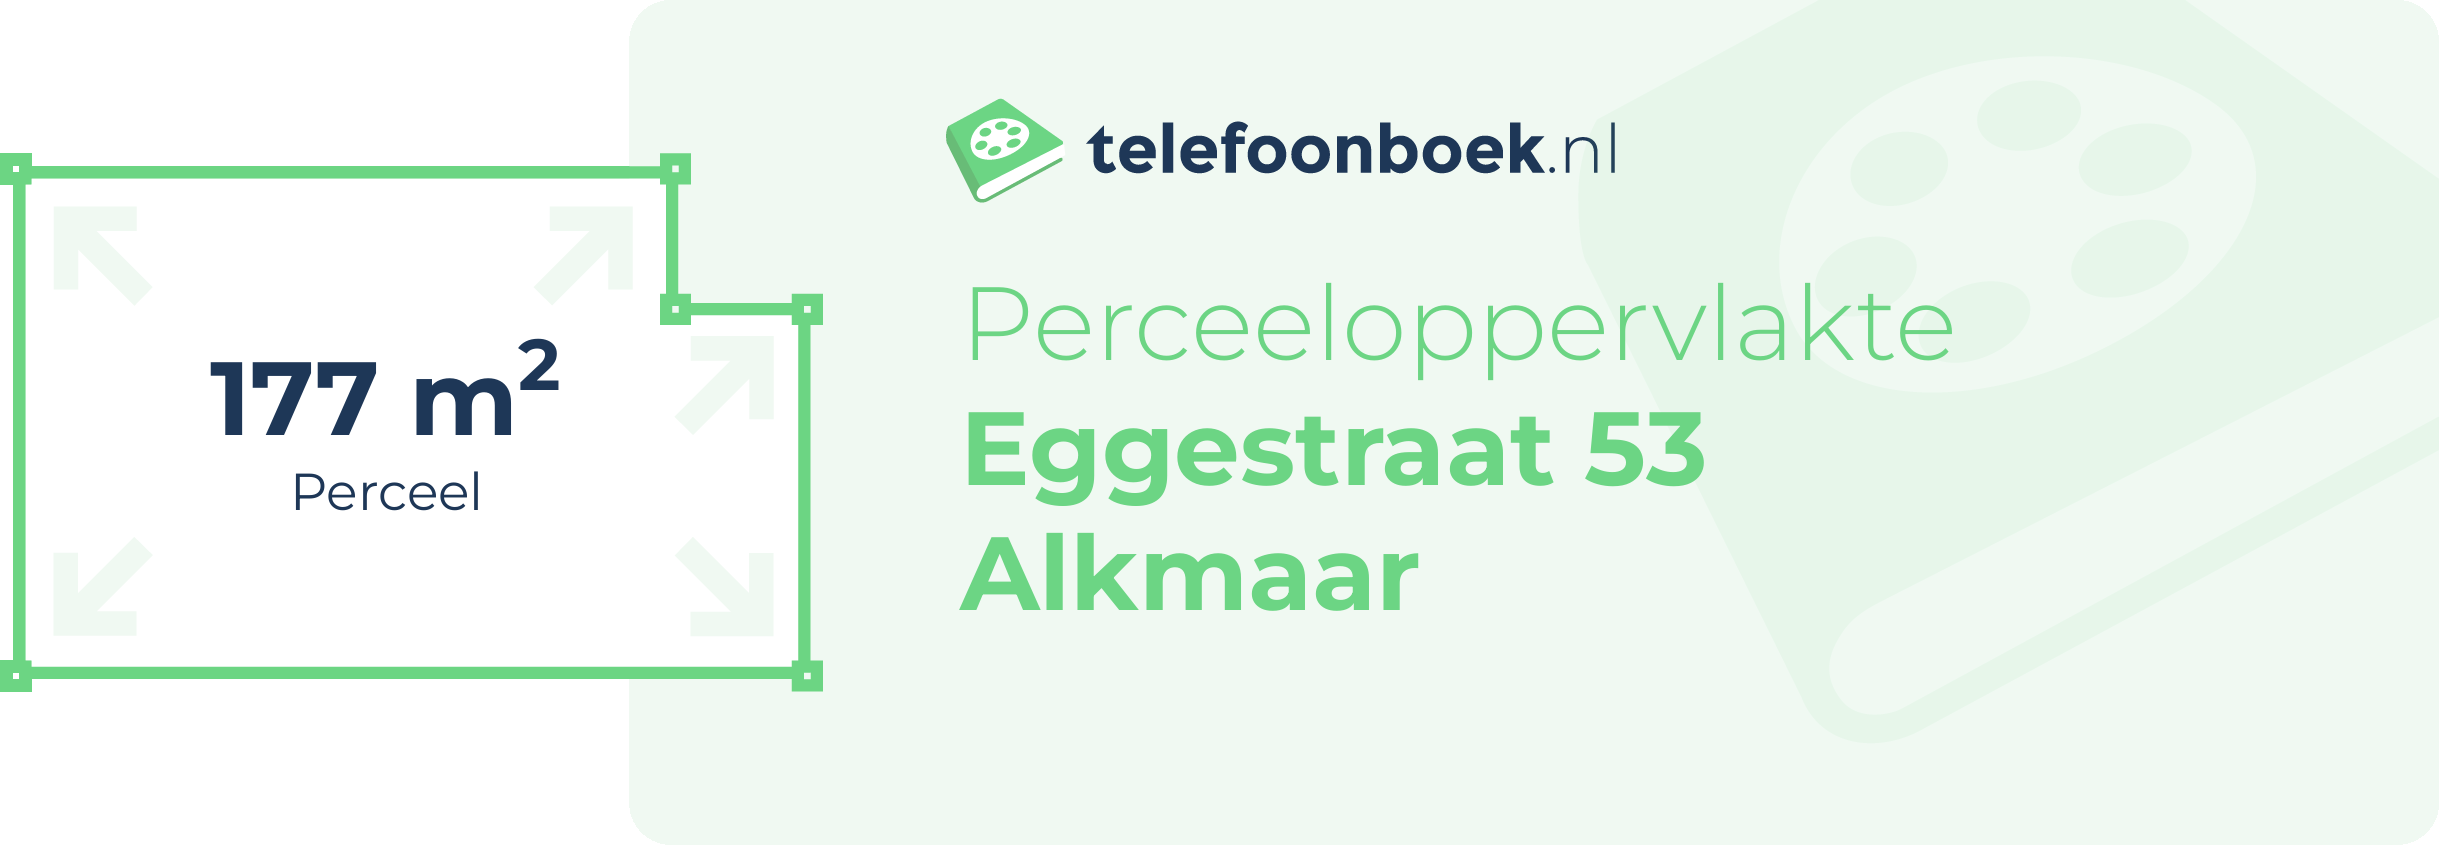 Perceeloppervlakte Eggestraat 53 Alkmaar